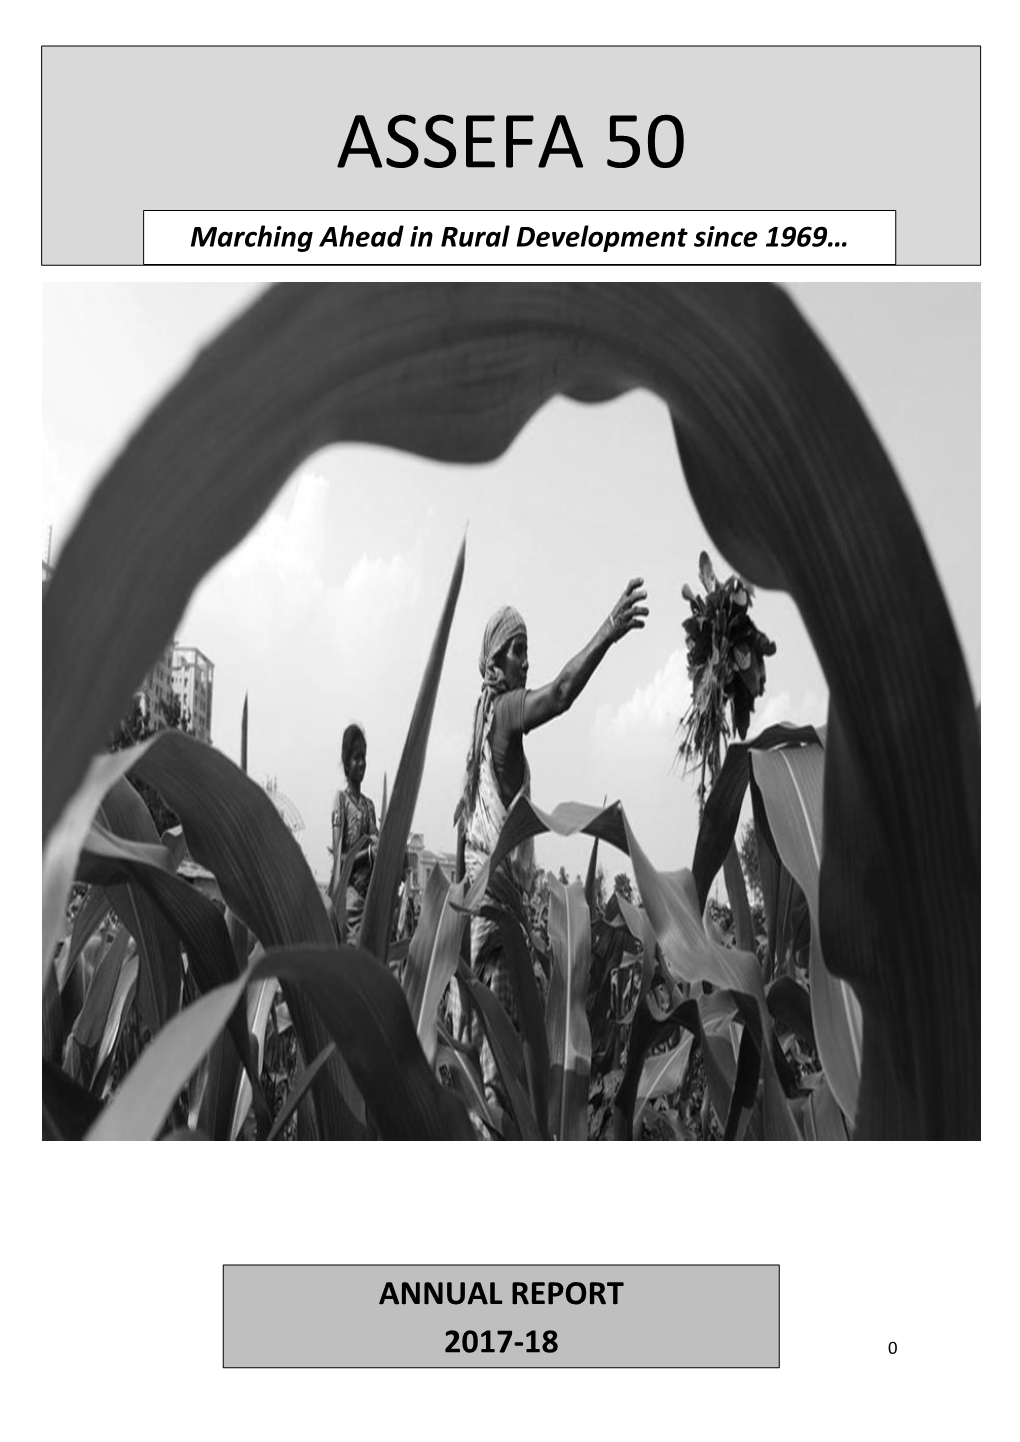 ASSEFA 50 S Marching Ahead in Rural Development Since 1969…